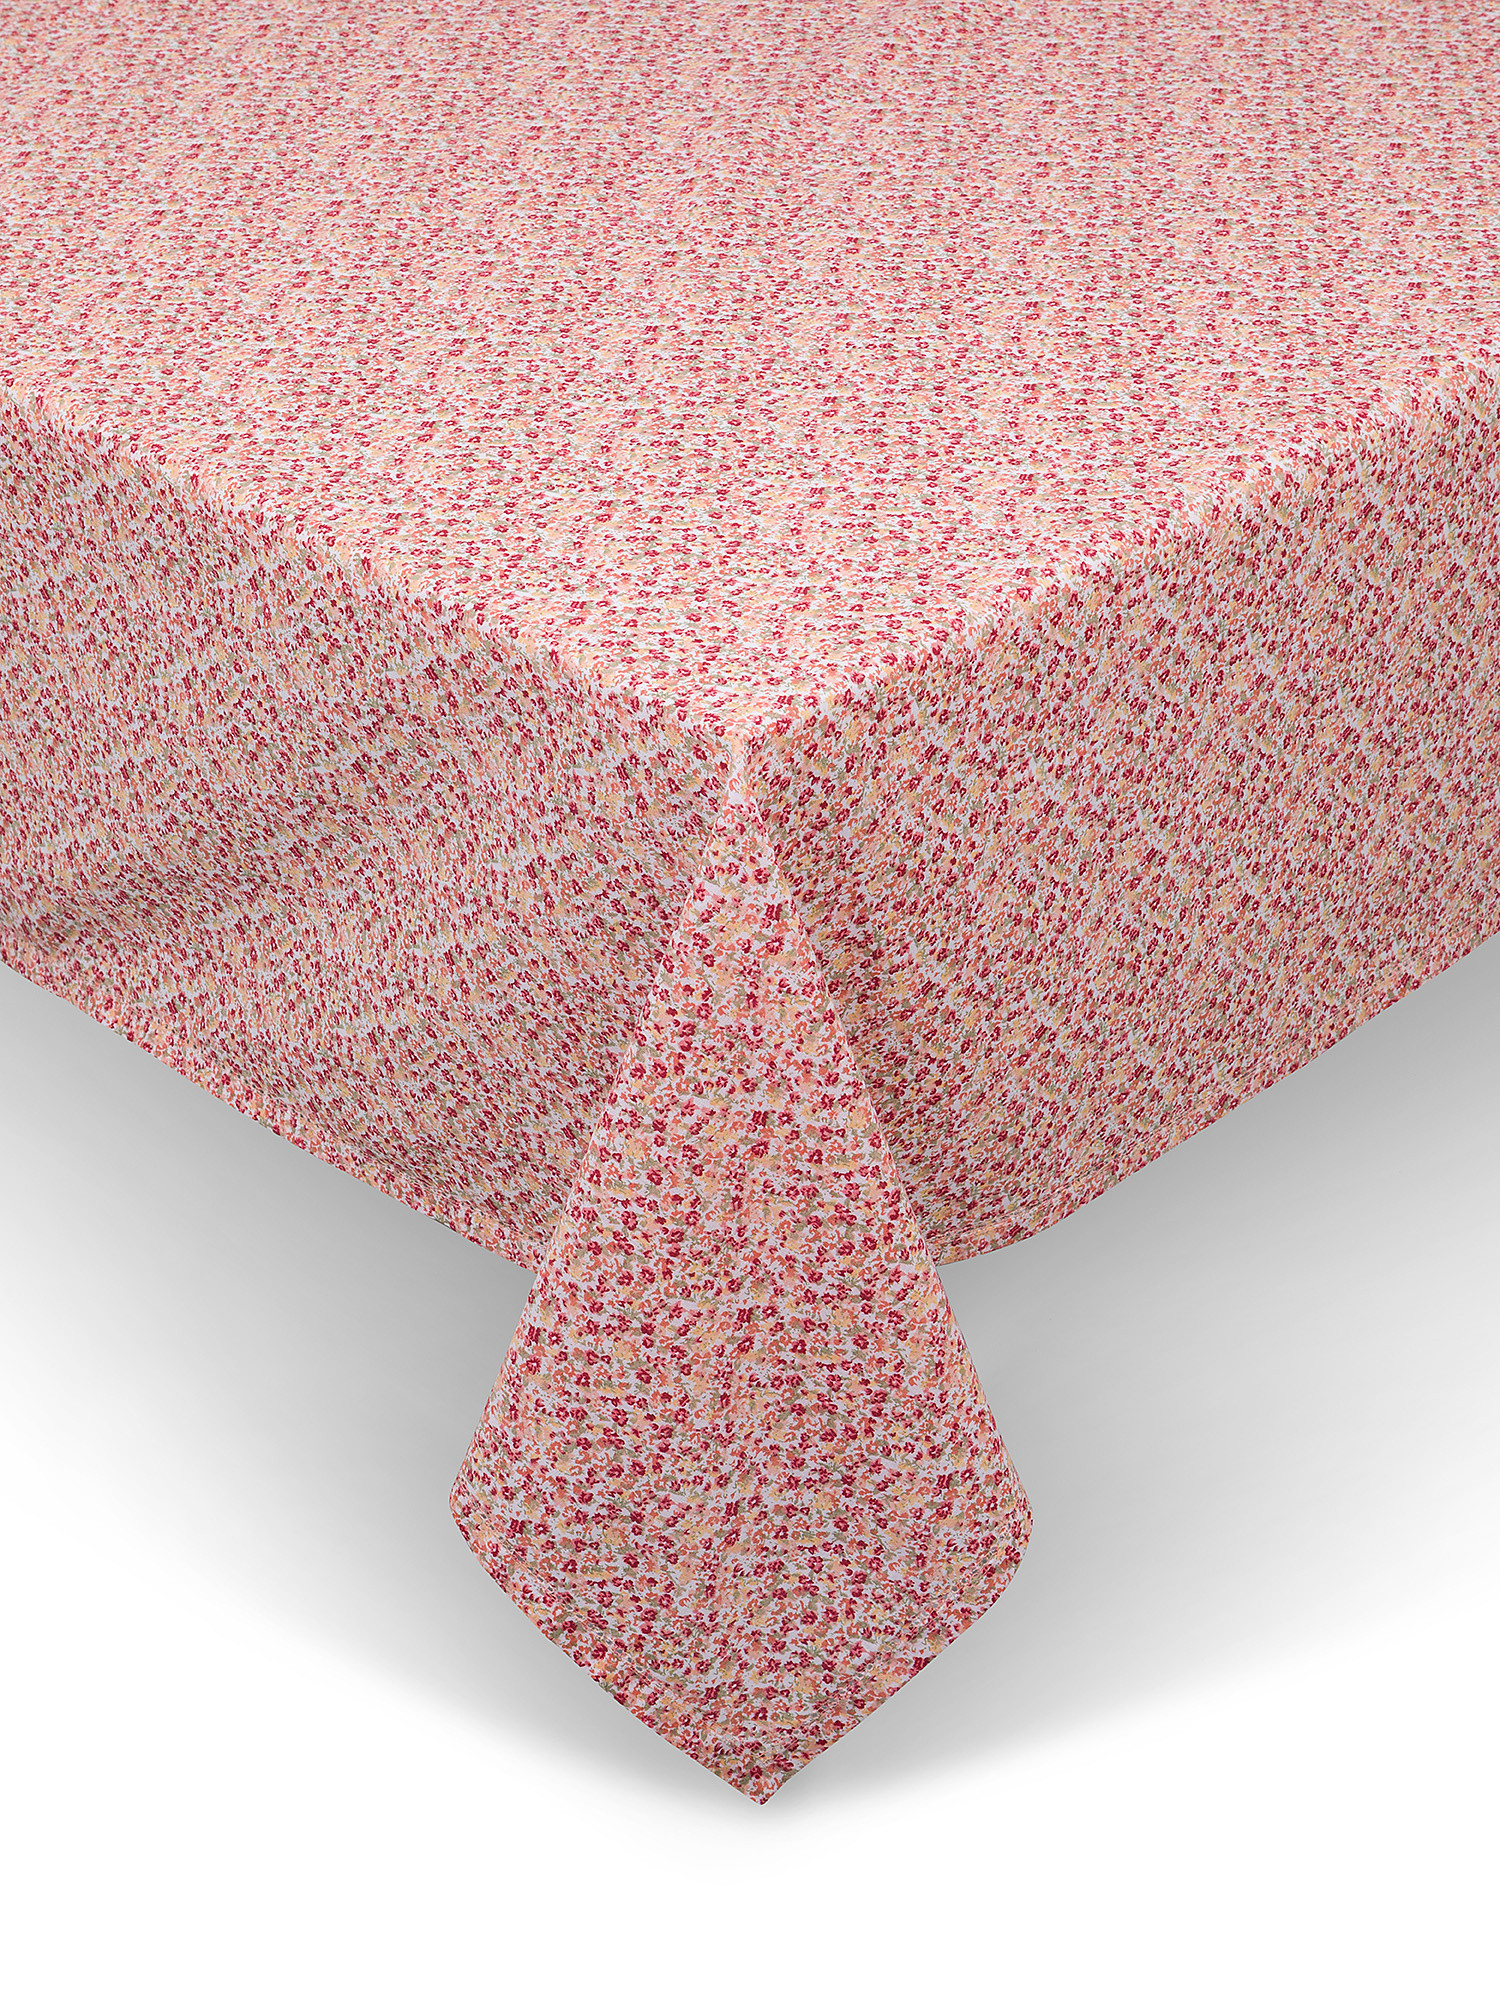 Tovaglia puro cotone stampa fiorellini, Rosa, large image number 0